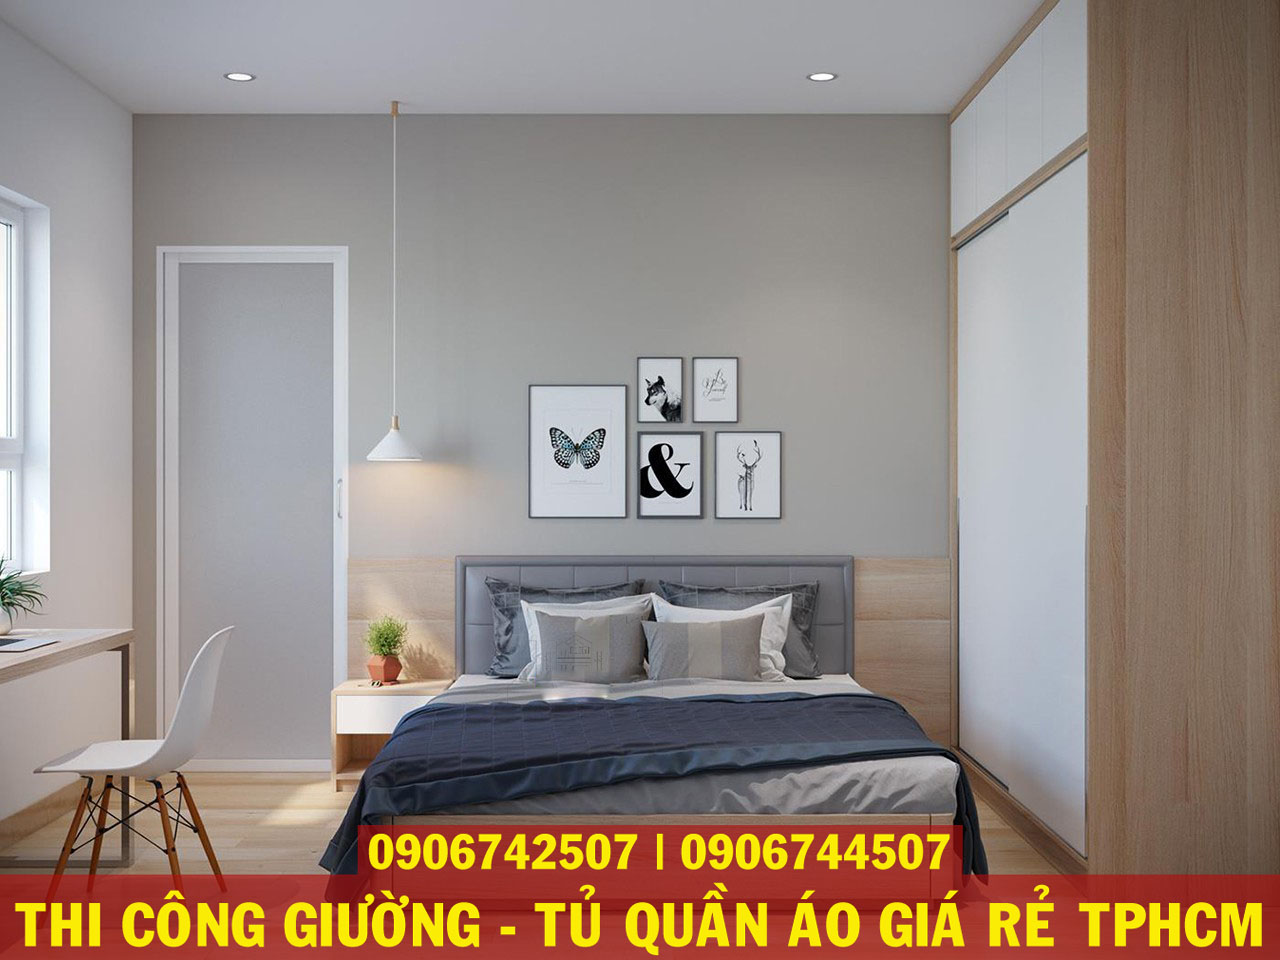 Một số mẫu giường tủ quần áo MDF melamine giá rẻ đẹp nhất TPHCM 2020